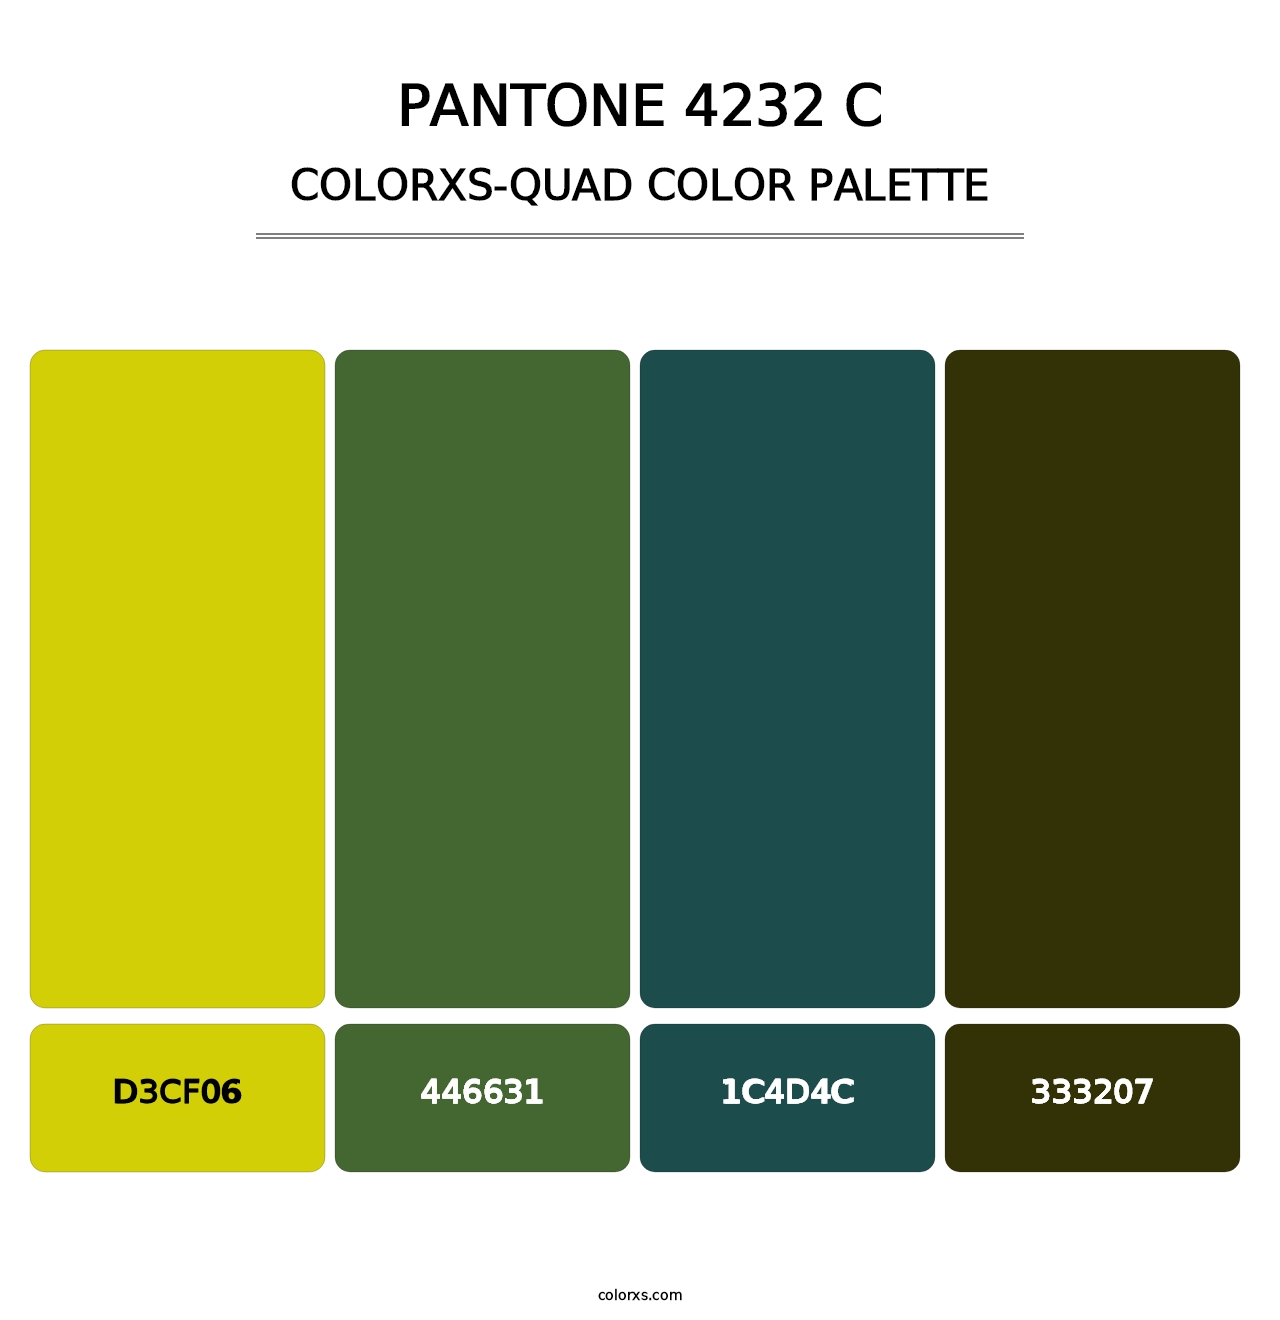 PANTONE 4232 C - Colorxs Quad Palette